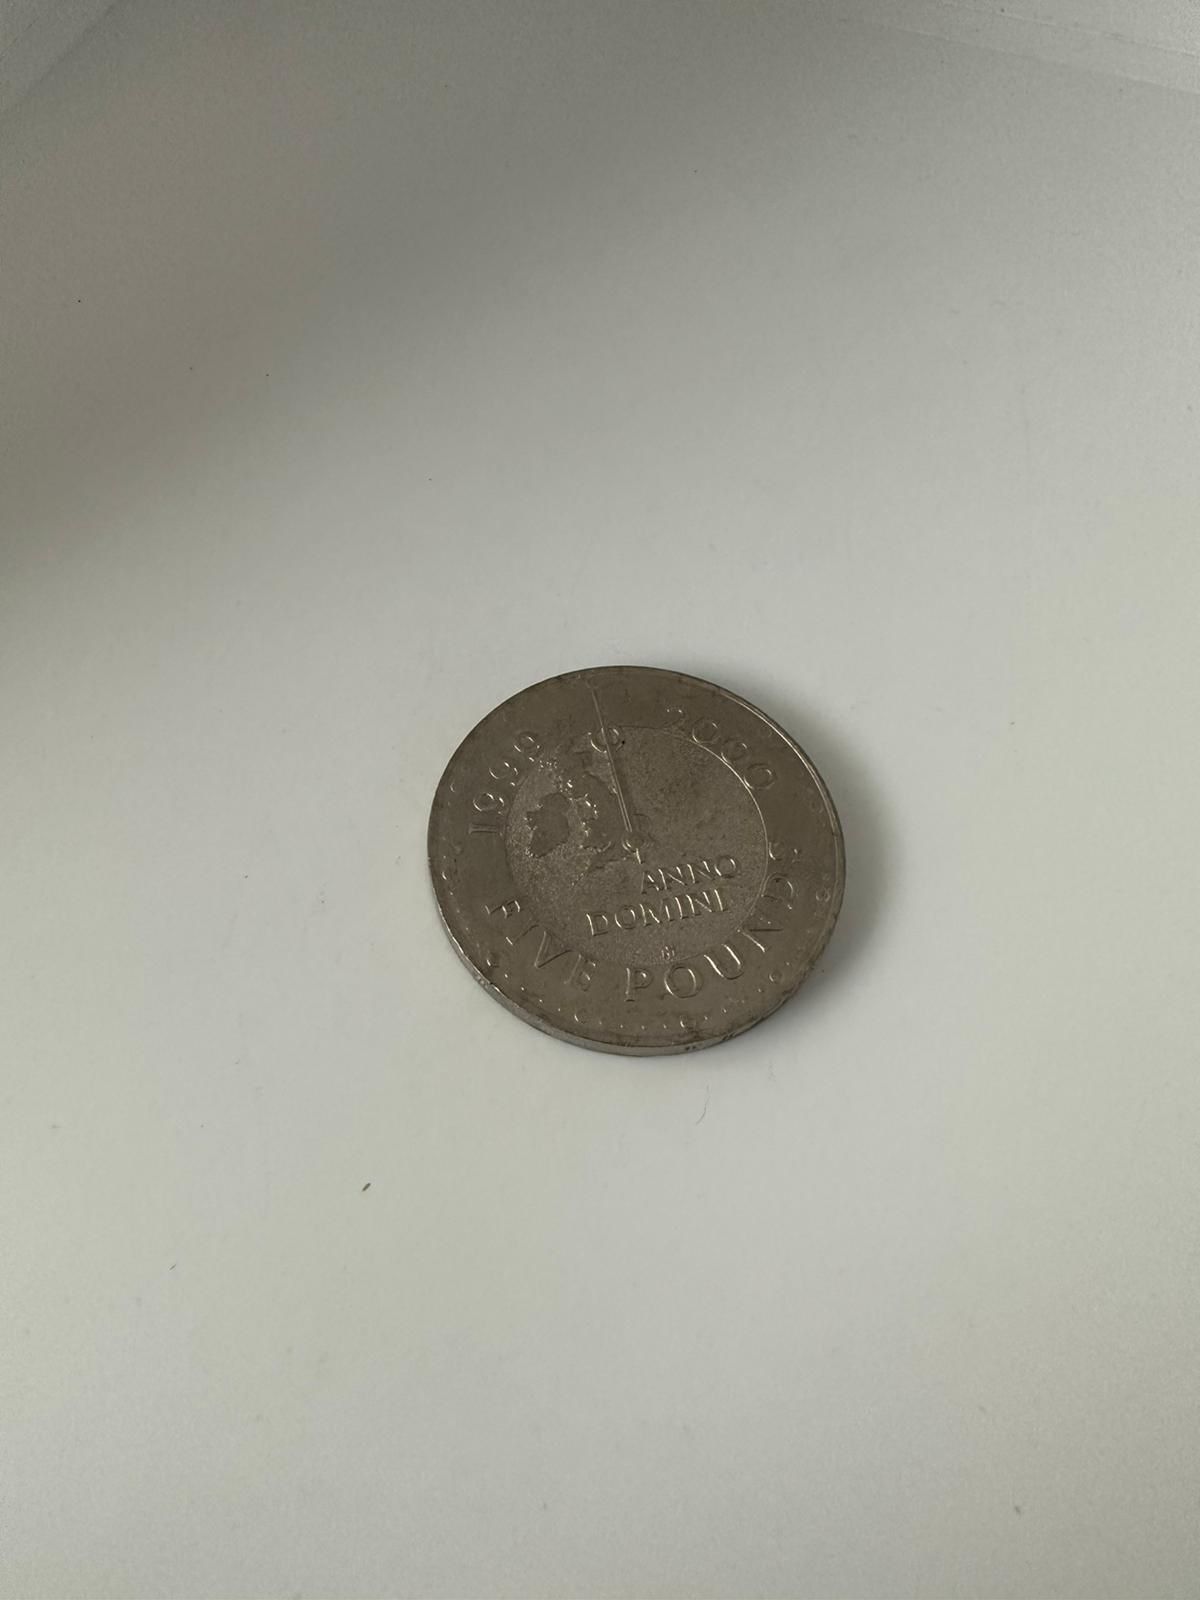 £5 coin